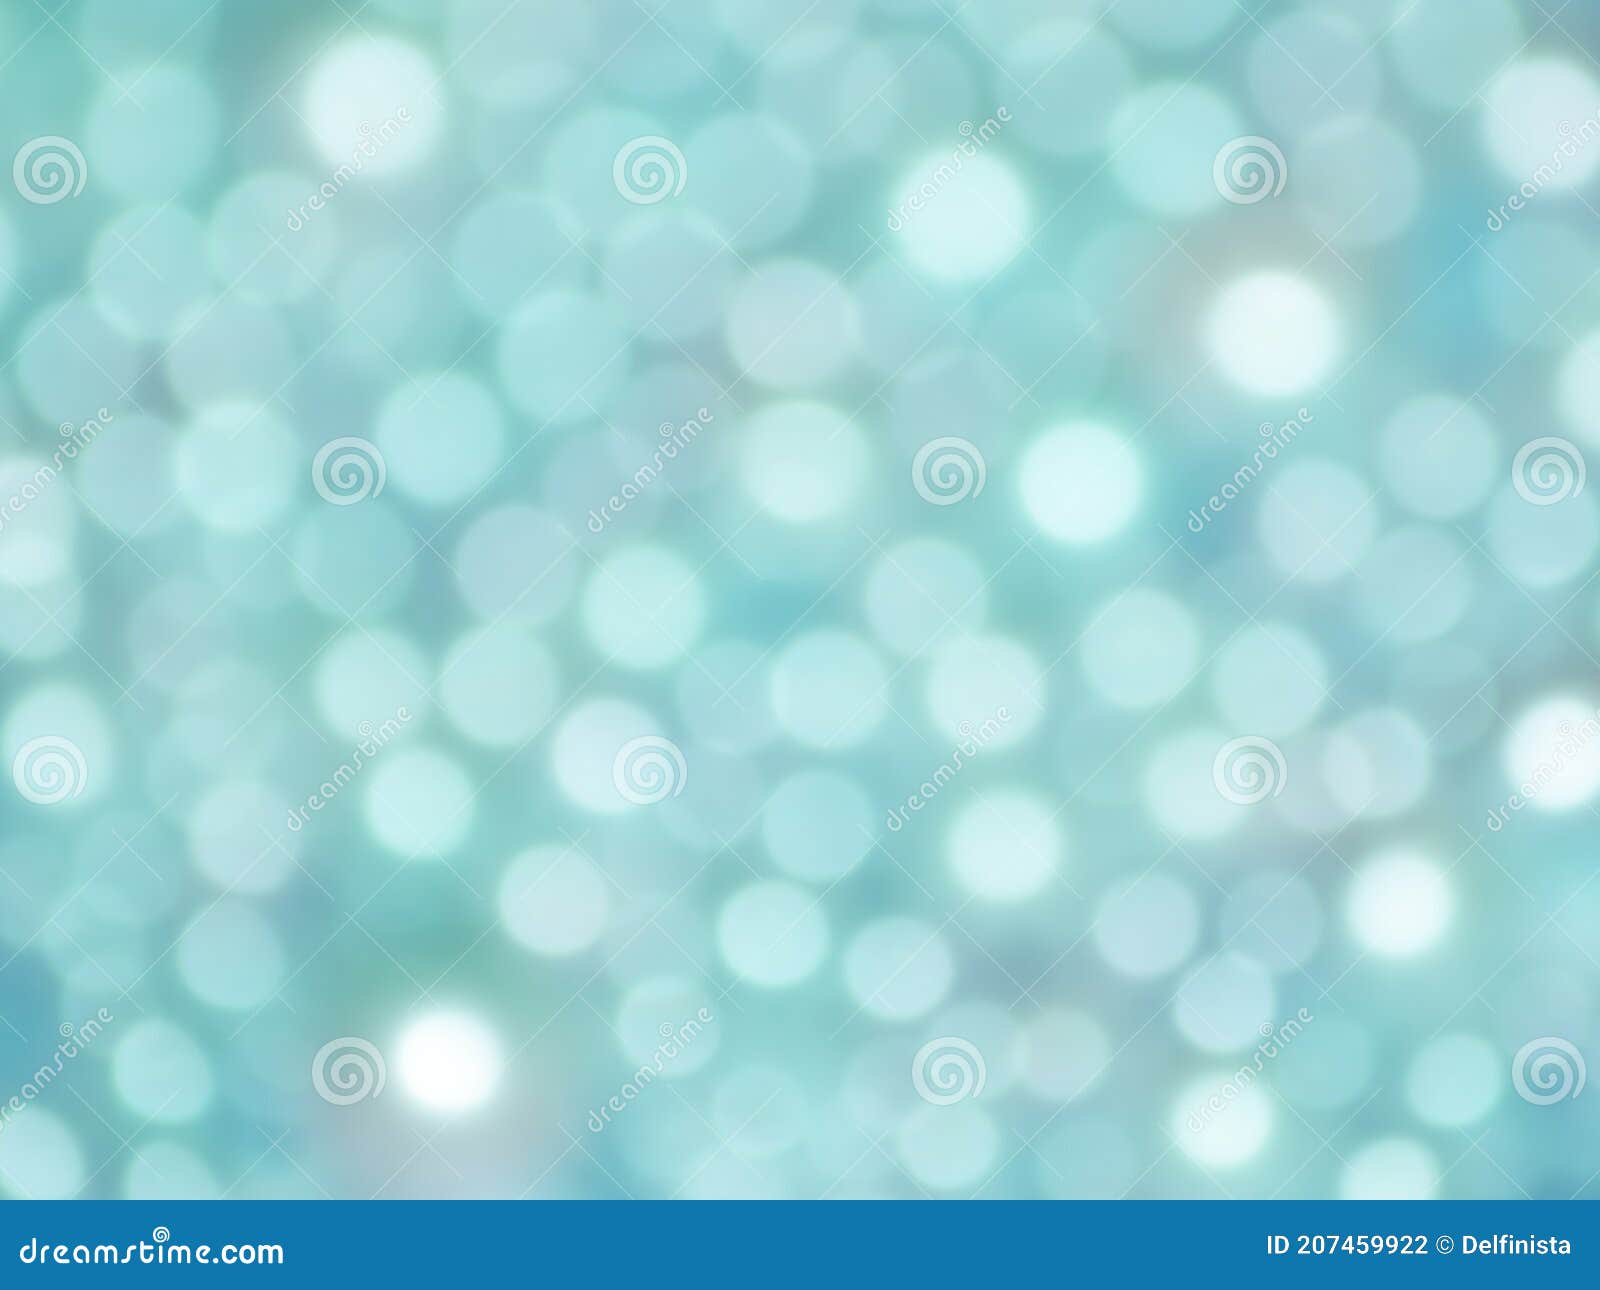 Nền Màu Xanh Tiffany là màu sắc không thể thiếu trong bộ sưu tập tạo nền cho máy tính của bạn. Với hiệu ứng tươi tắn và đầy sức sống, màu sắc này sẽ giúp bạn tăng cường tinh thần làm việc hay thư giãn sau những giờ làm việc căng thẳng. Hãy tìm hiểu ngay hình ảnh liên quan đến nền màu xanh tiffany để biết thêm chi tiết nhé!